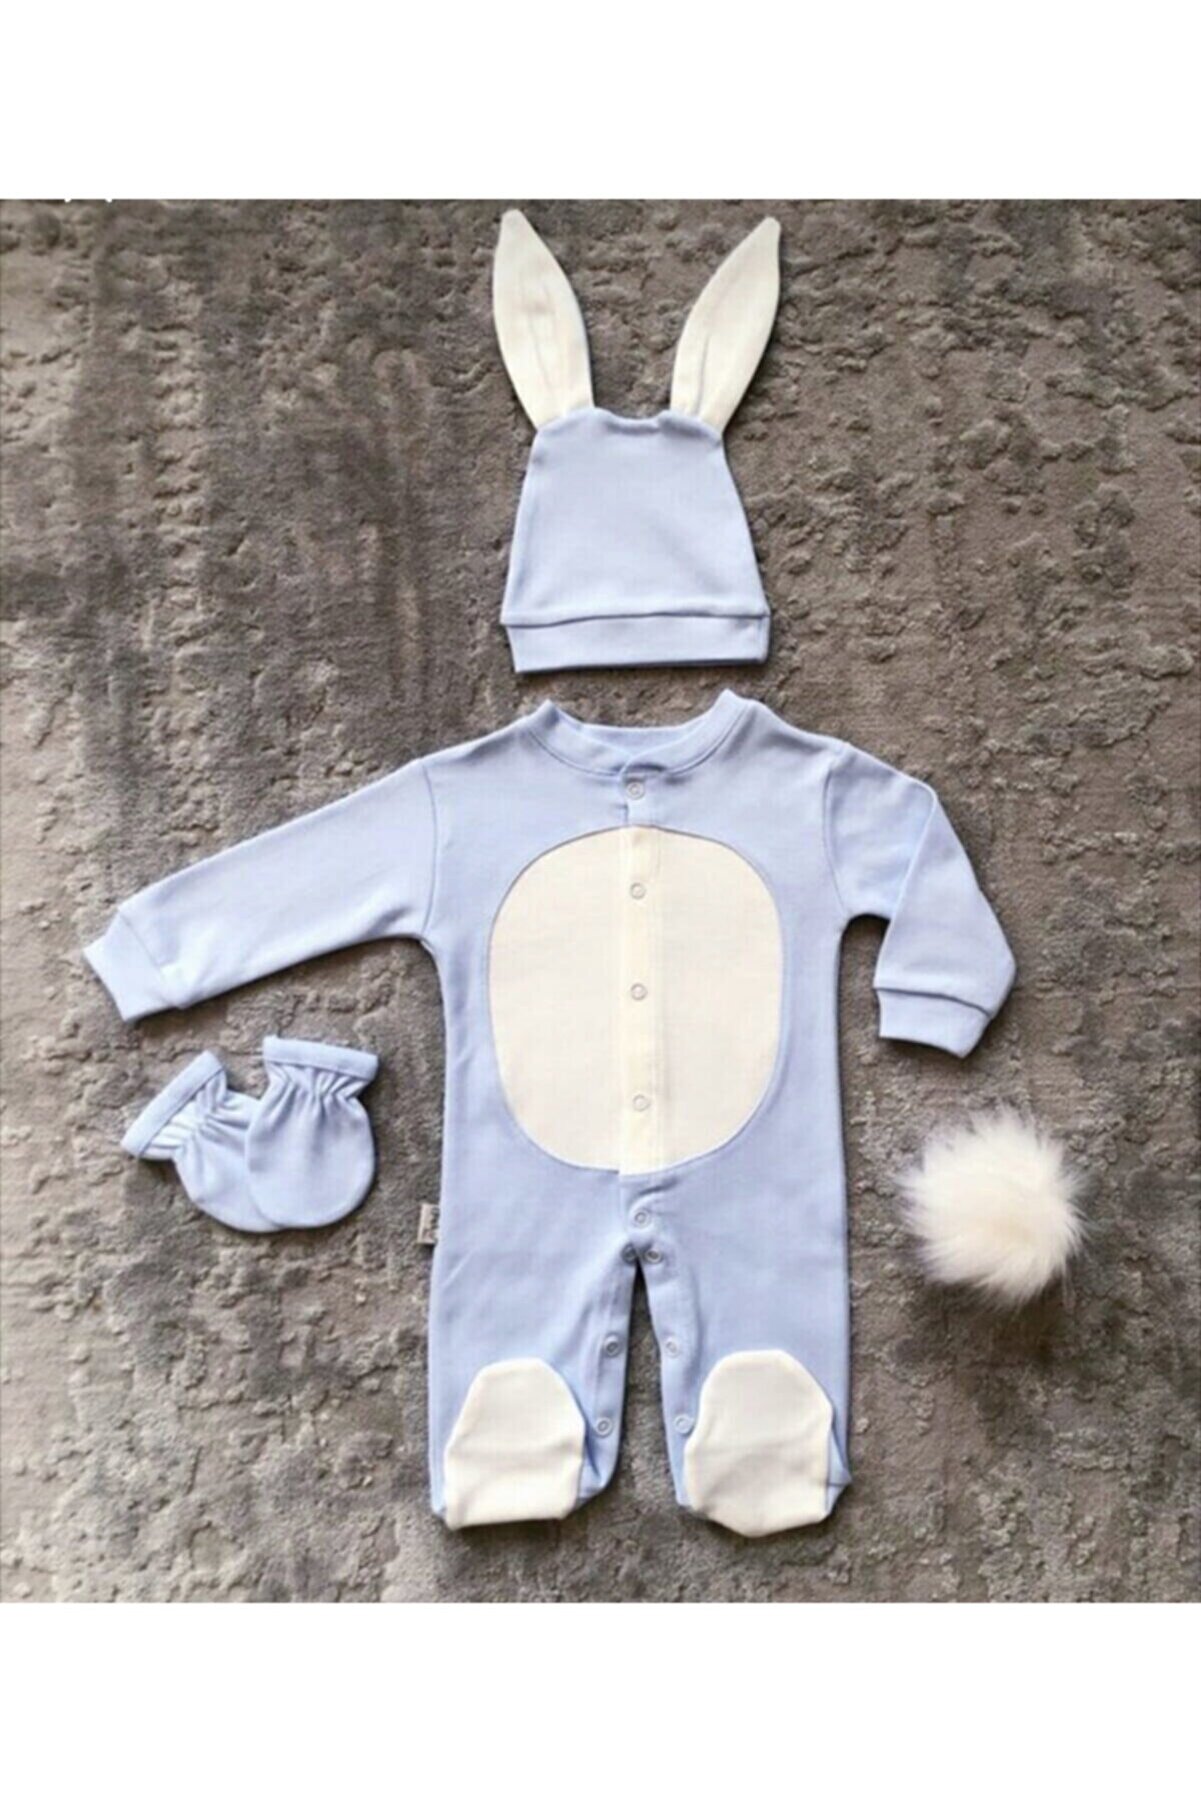 aymira tasarım Bebek Tavşanlı Tulum